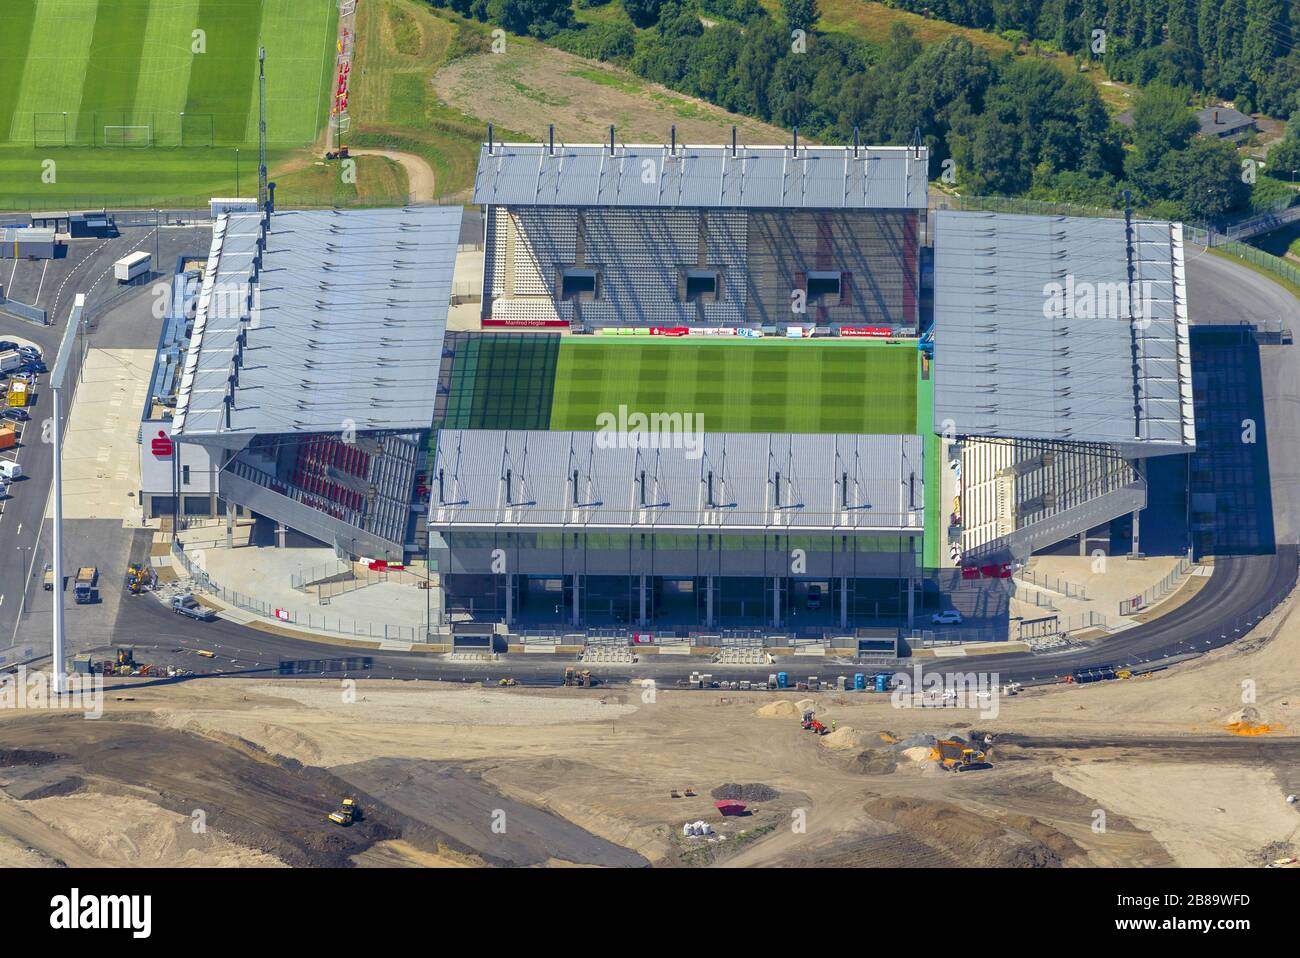 , new building of RW-stadium in Hafenstrasse in Essen, football ground of Rot-Weiss-Essen, 01.08.2013, aerial view, Germany, North Rhine-Westphalia, Ruhr Area, Essen Stock Photo